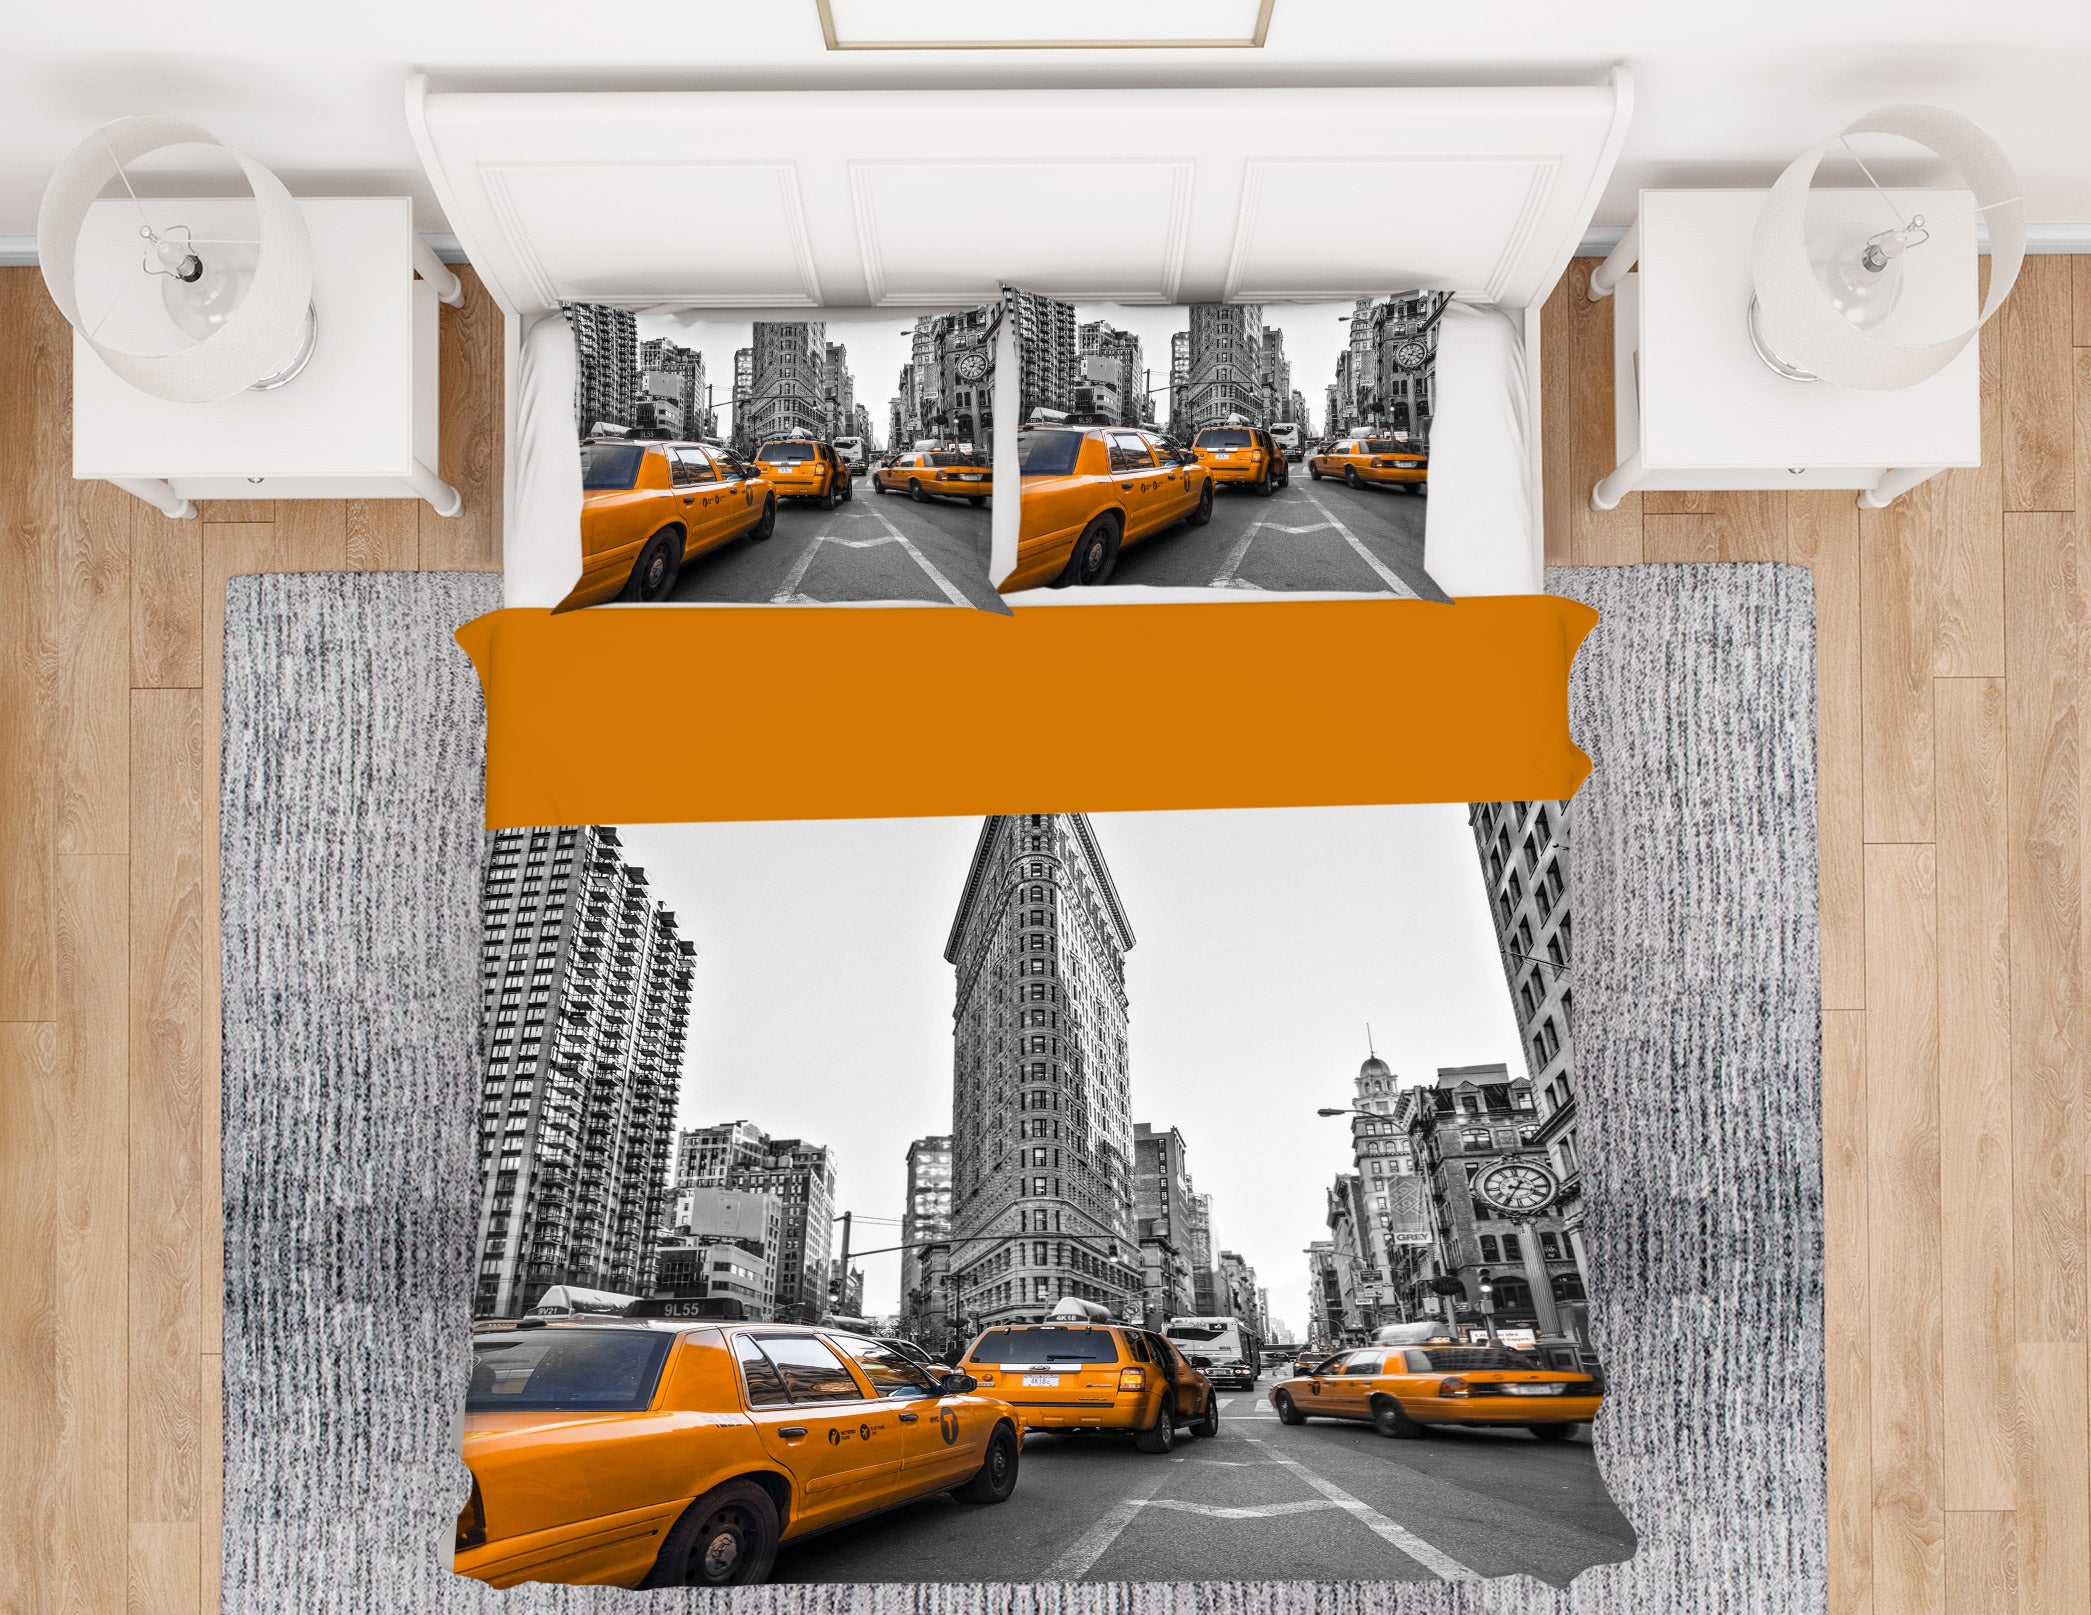 3D New York Taxi 1015 Assaf Frank Bedding Bed Pillowcases Quilt